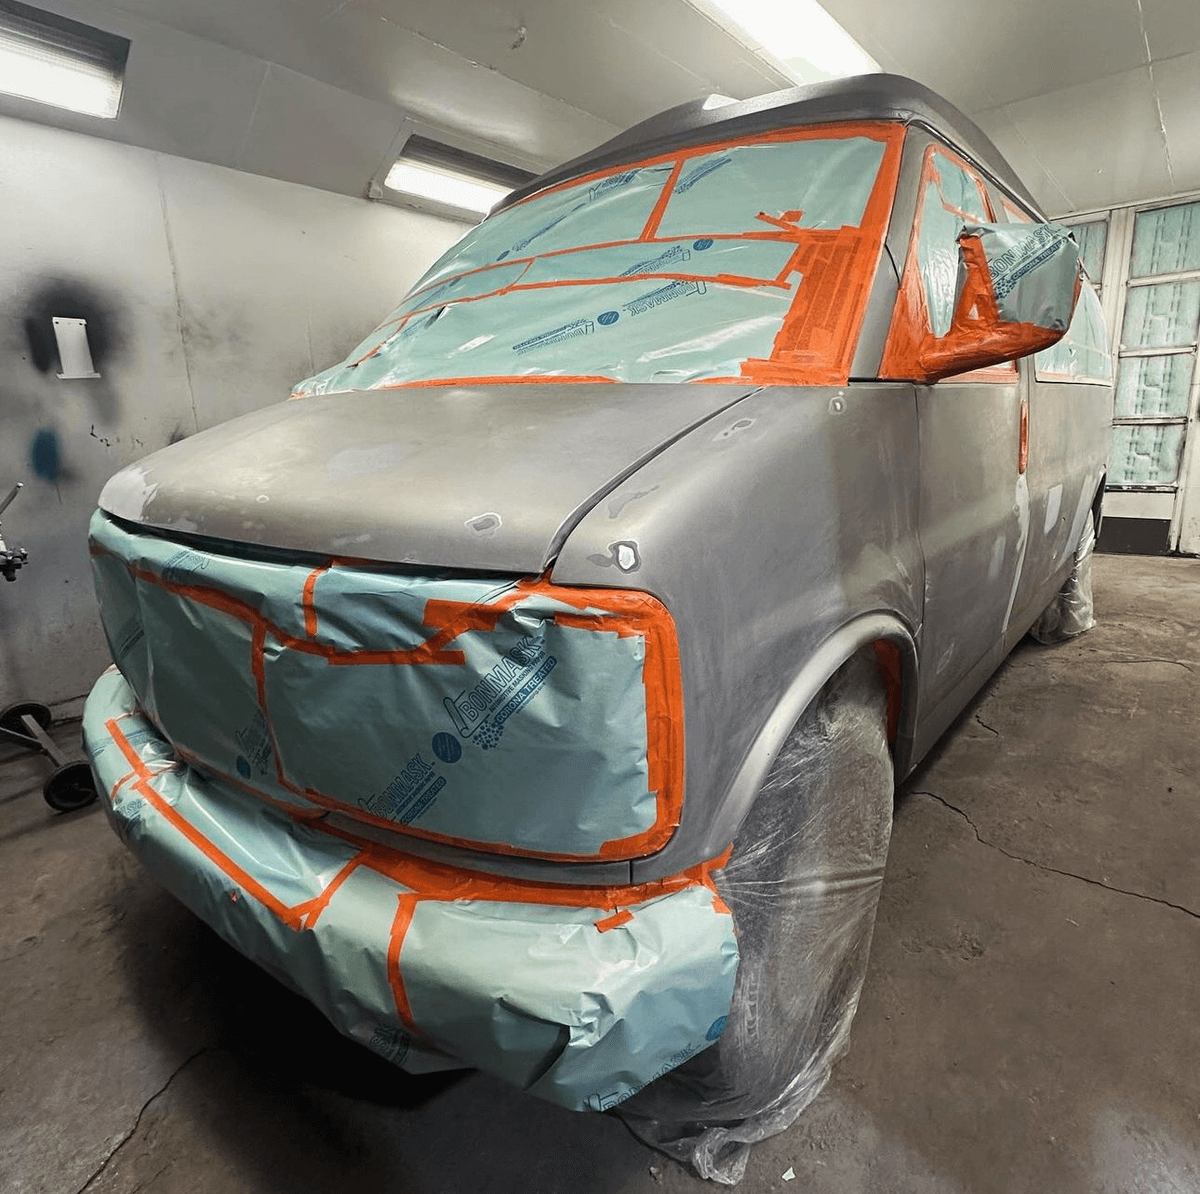 Van receiving new coat of paint